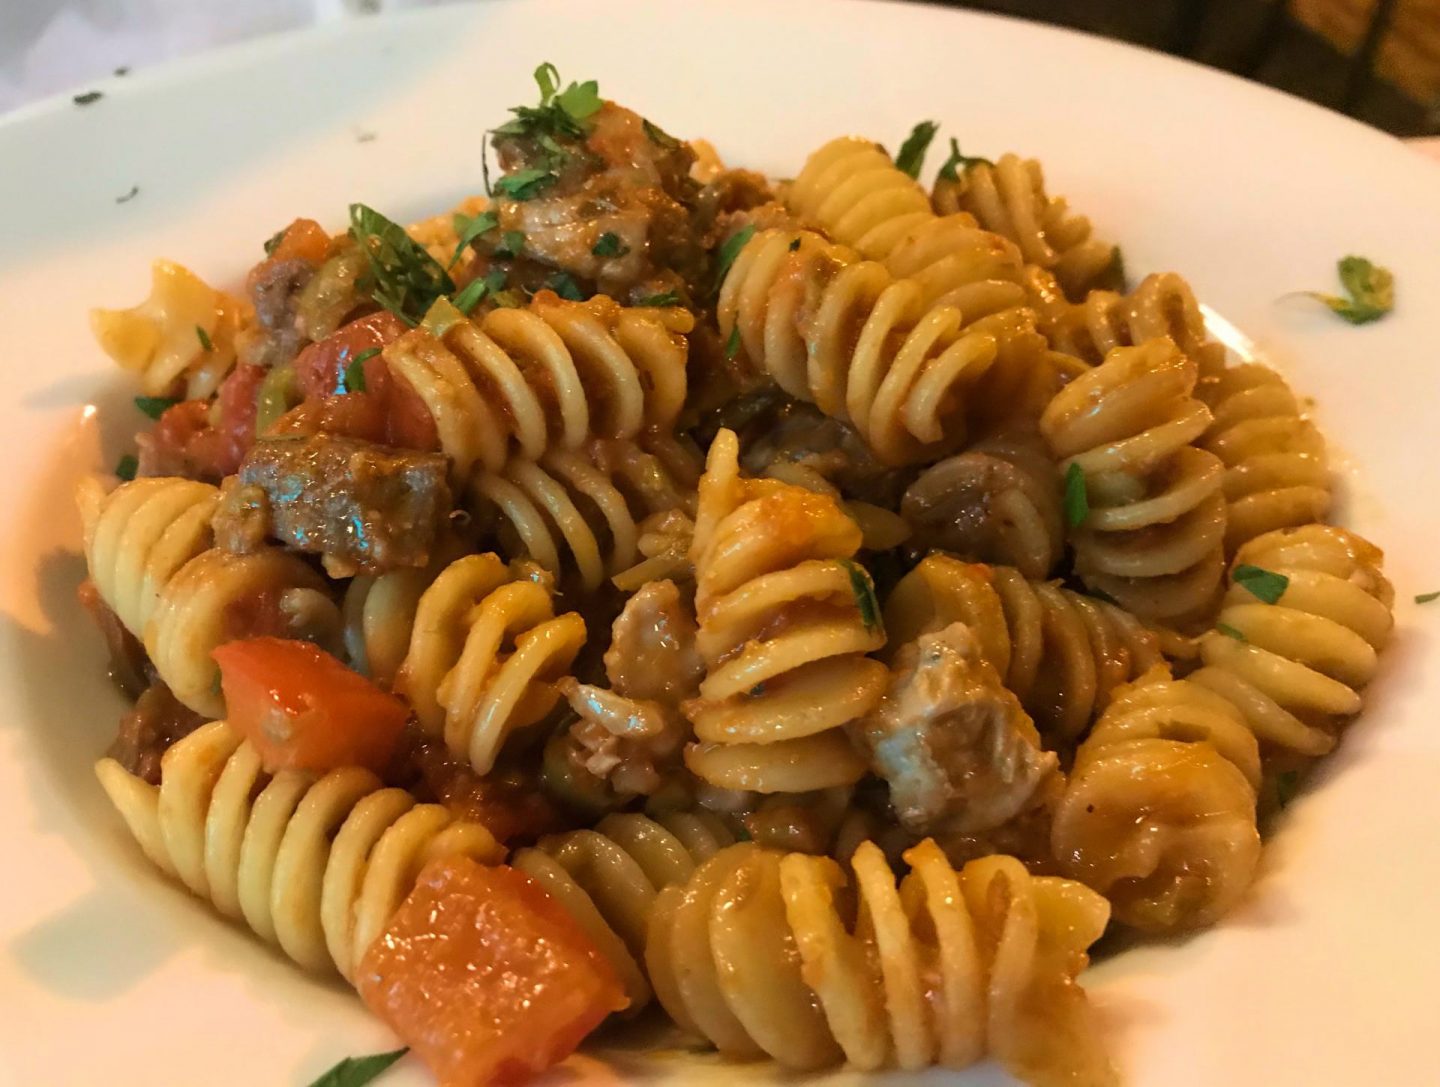 Erfahrung Bewertung Kritik Hotel Brenzone Pasta mit frischem Thunfisch Foodblog Sternestulle